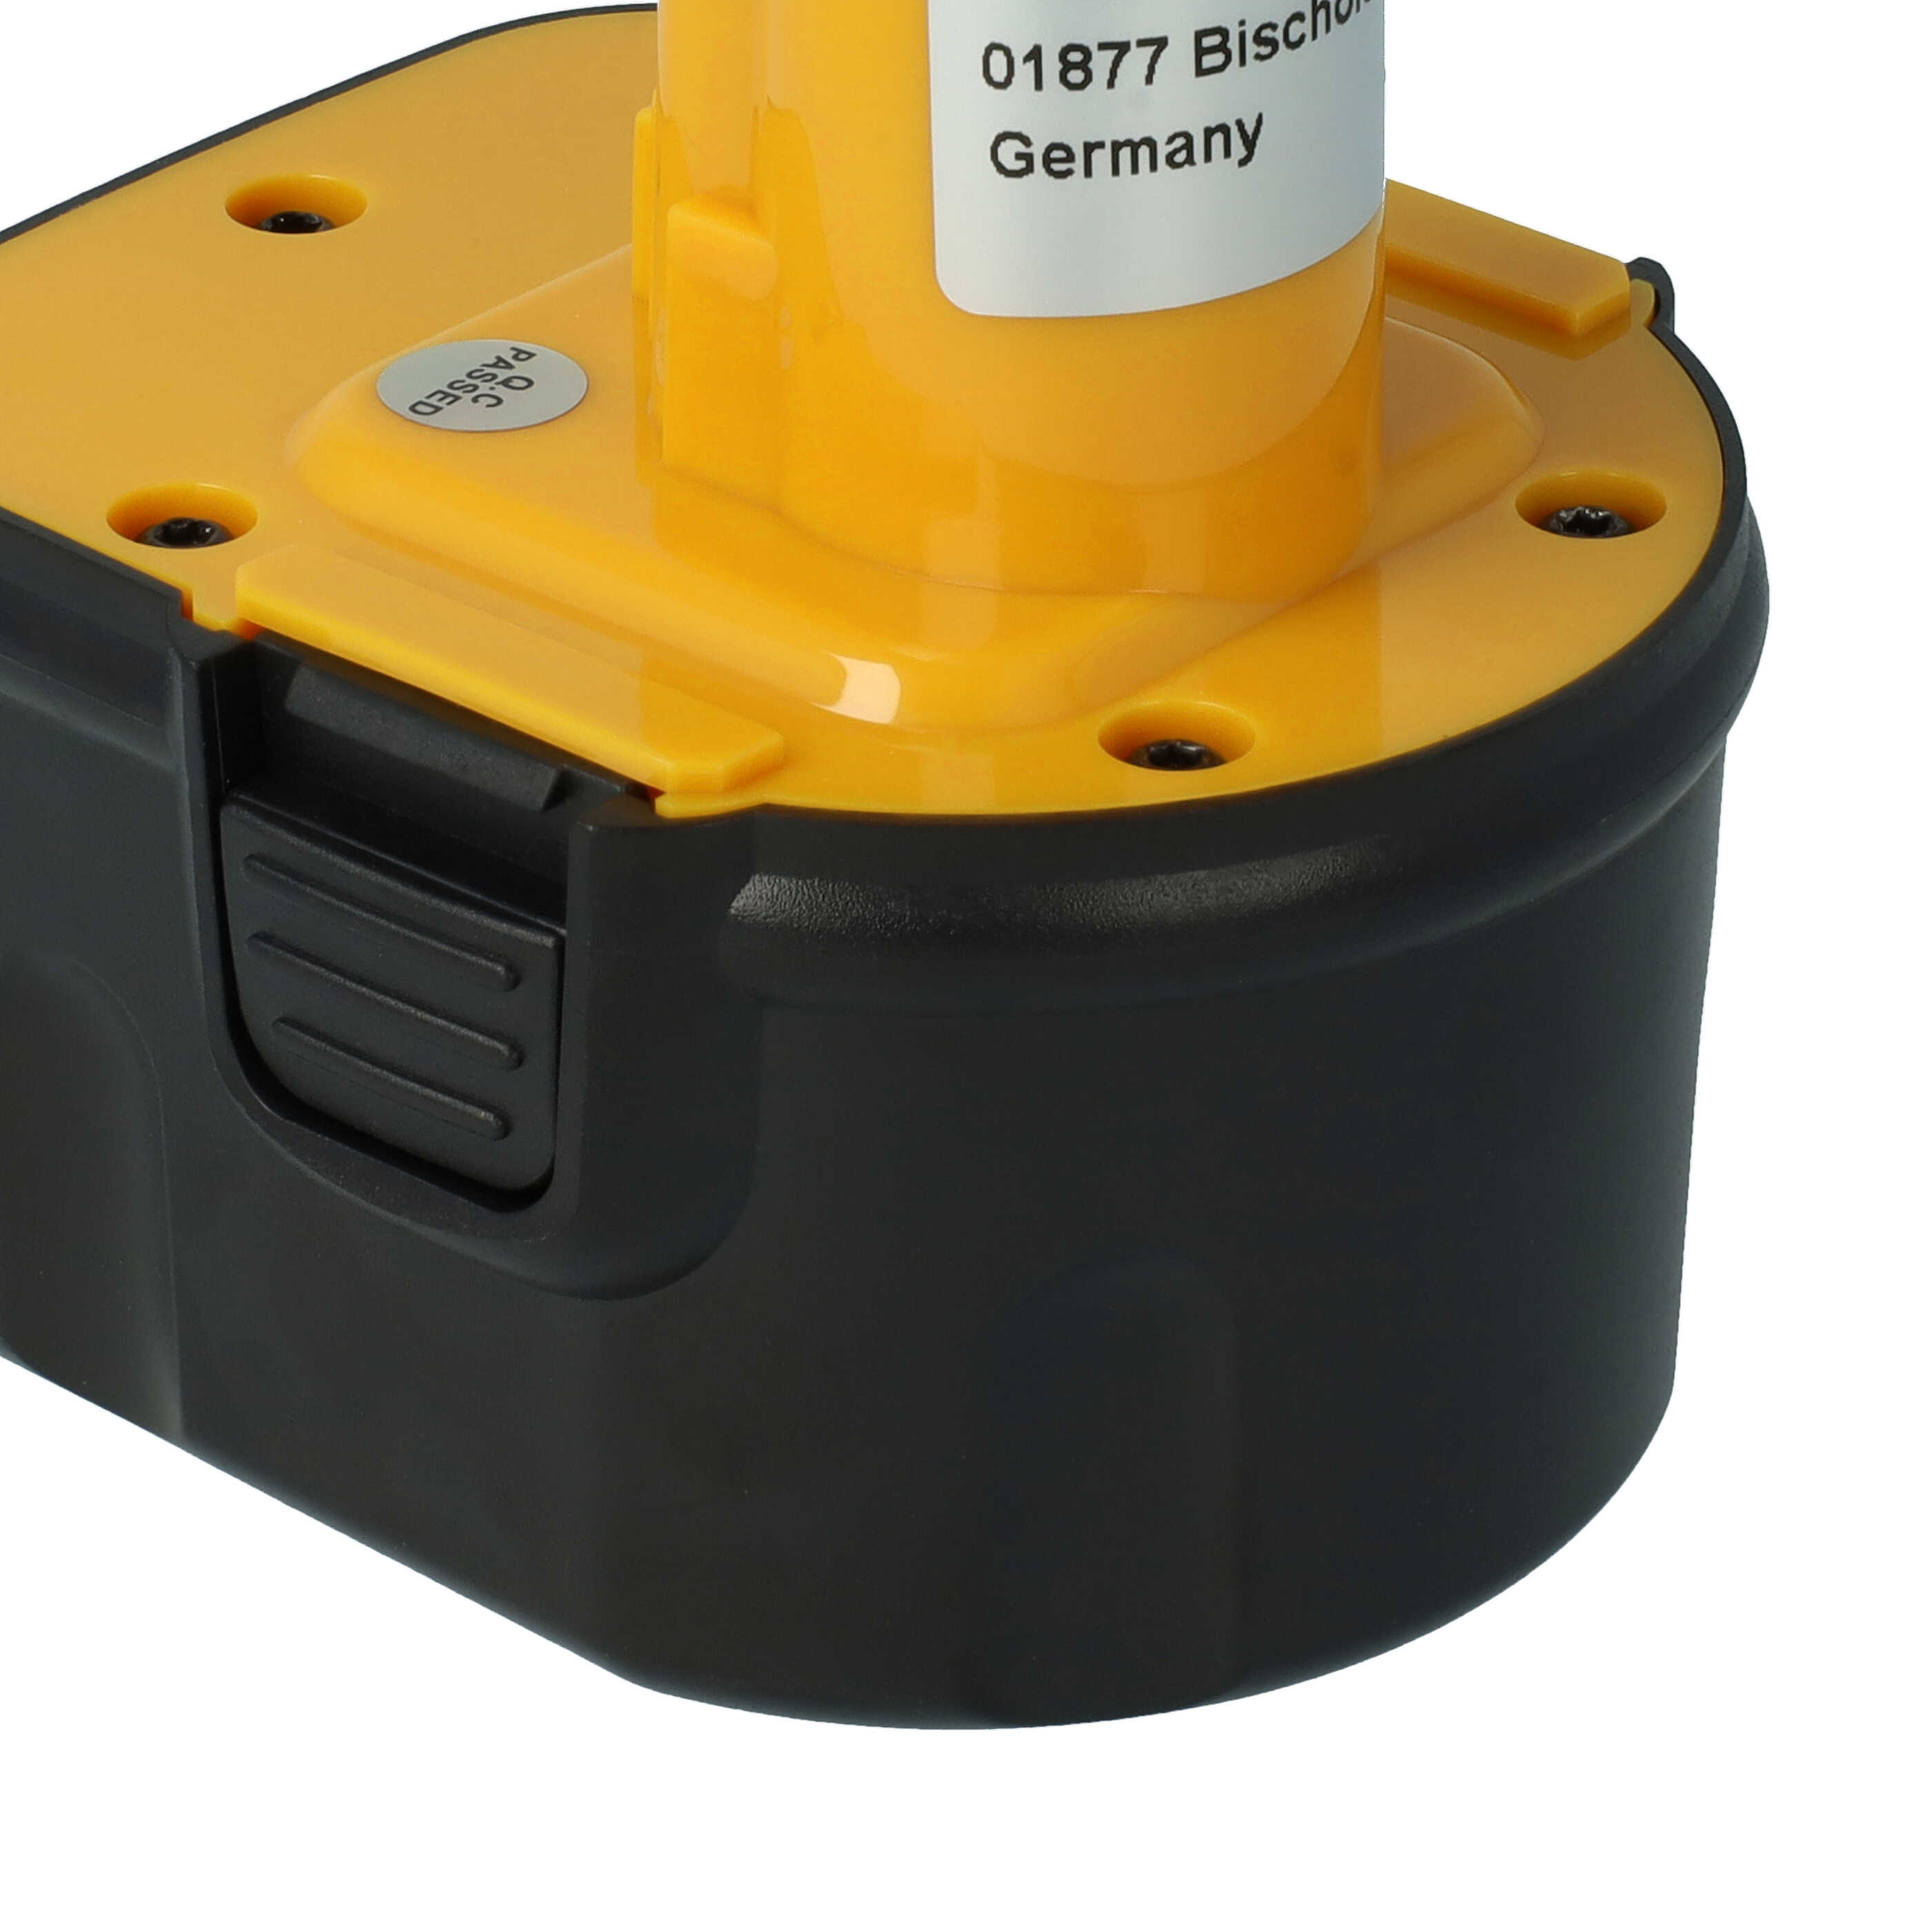 Batterie remplace Black & Decker A9266, A9275, A9252, FSL, CD, FS pour outil électrique - 2000 mAh, 12 V, NiMH